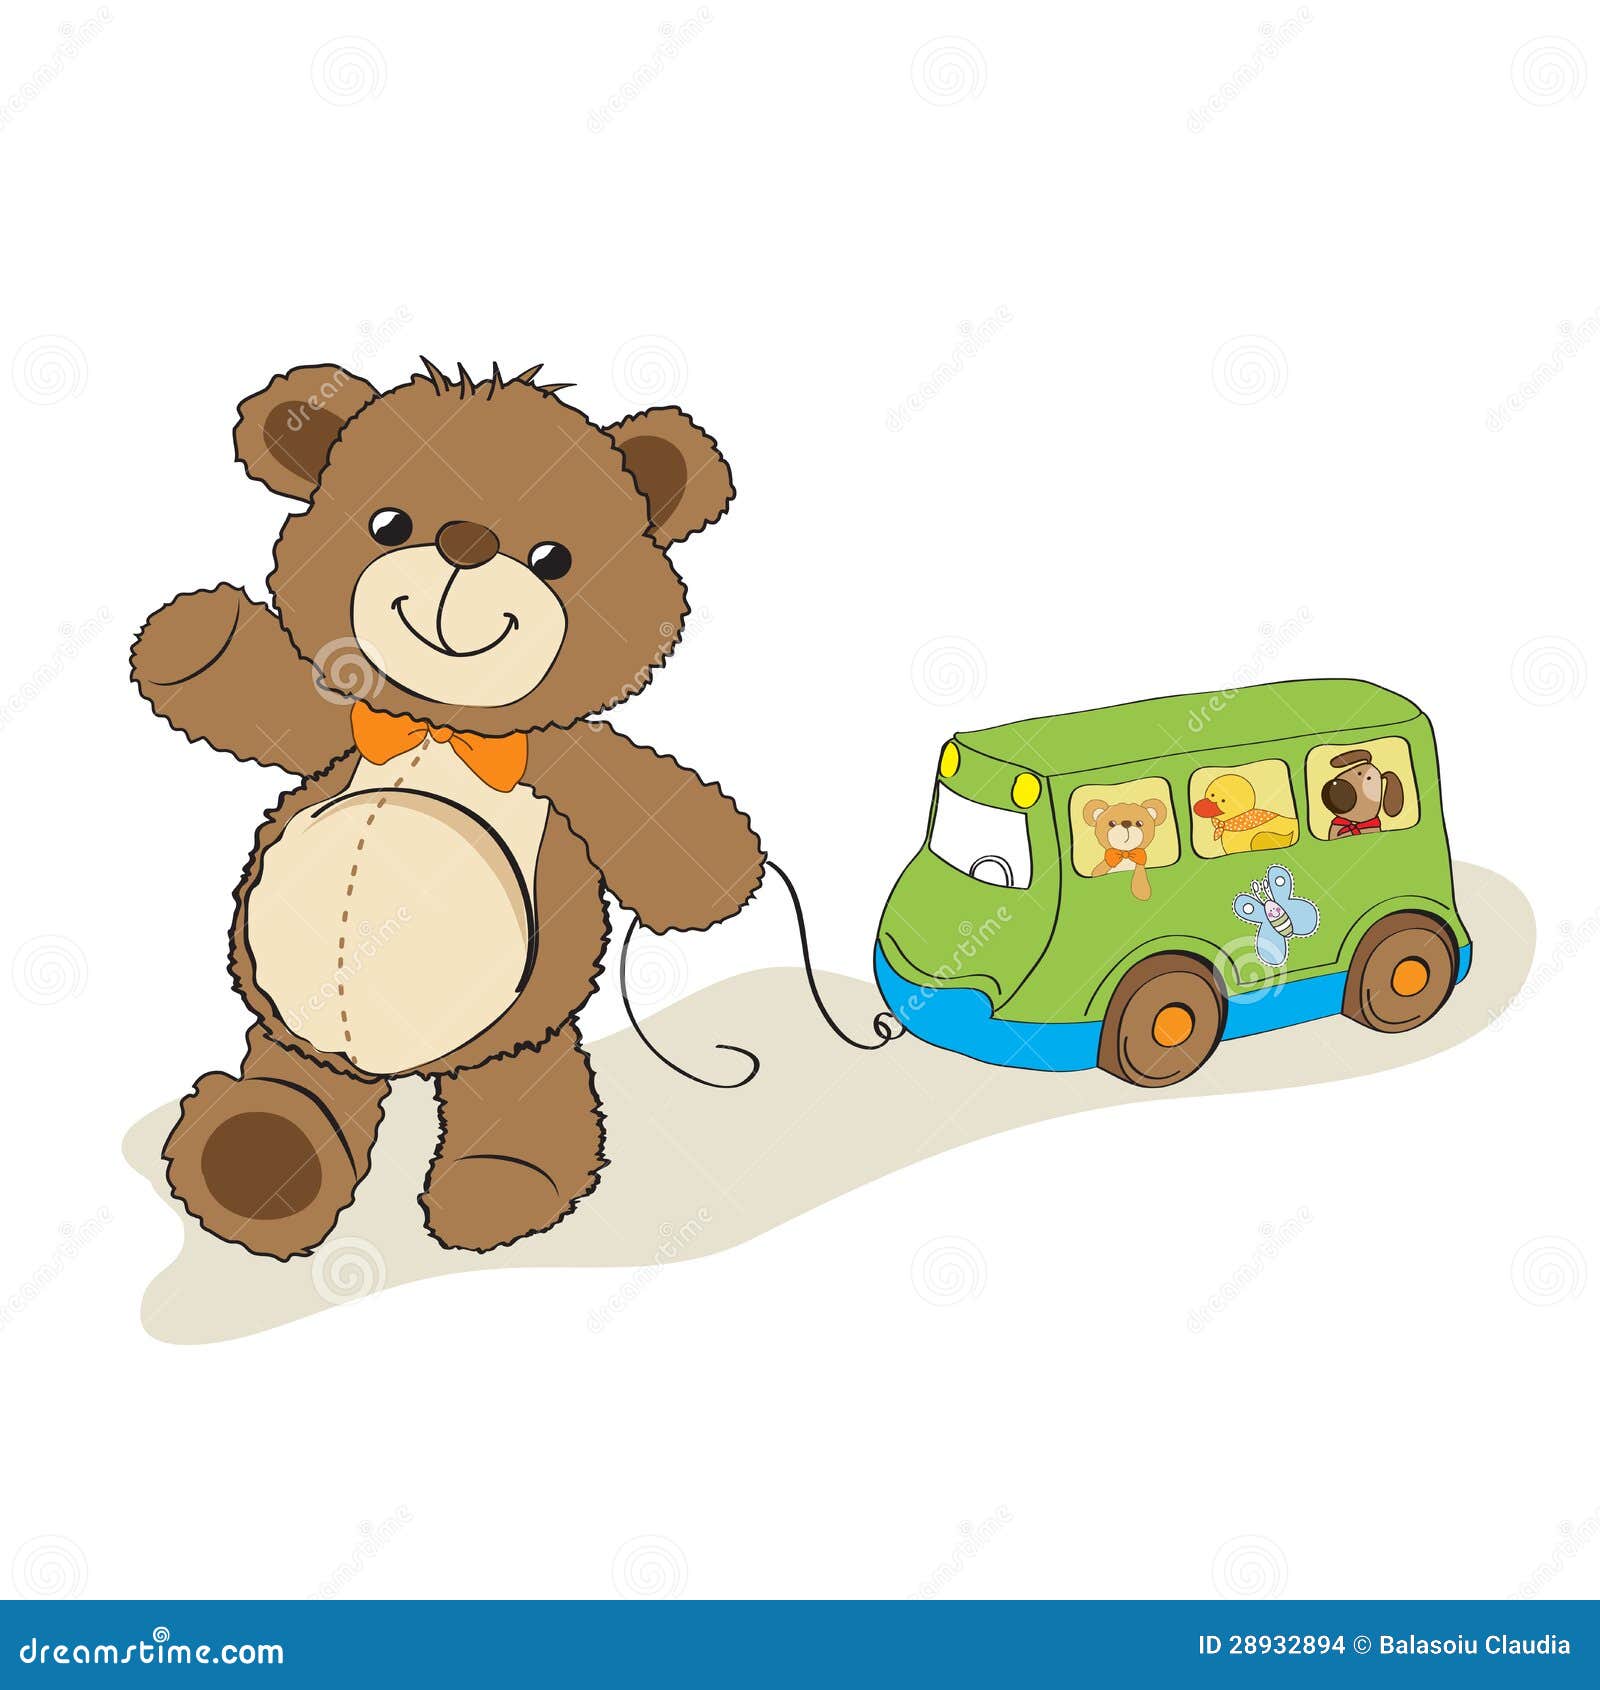 Les mondes meilleurs chauffeur de bus Teddy Bear 